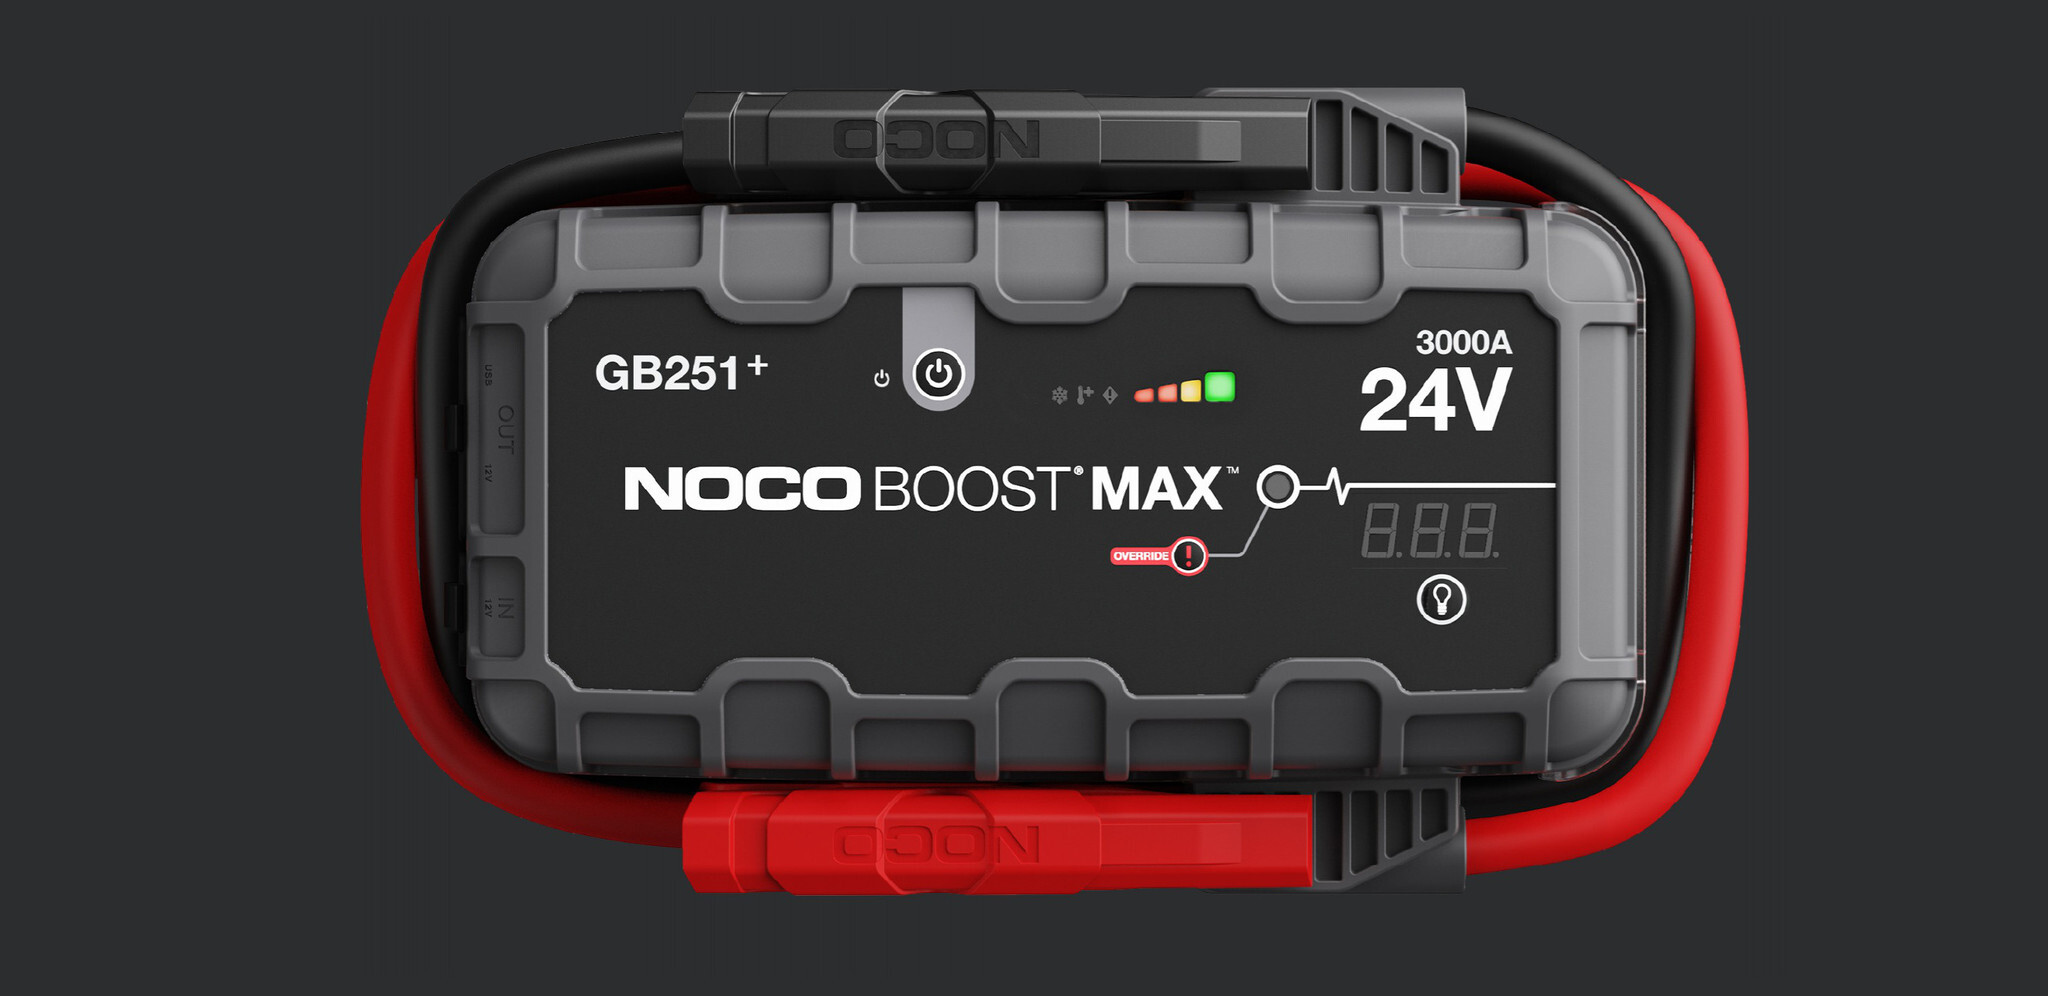 Noco Genius GB251 Boost Max Jumpstarter 24V 3000A